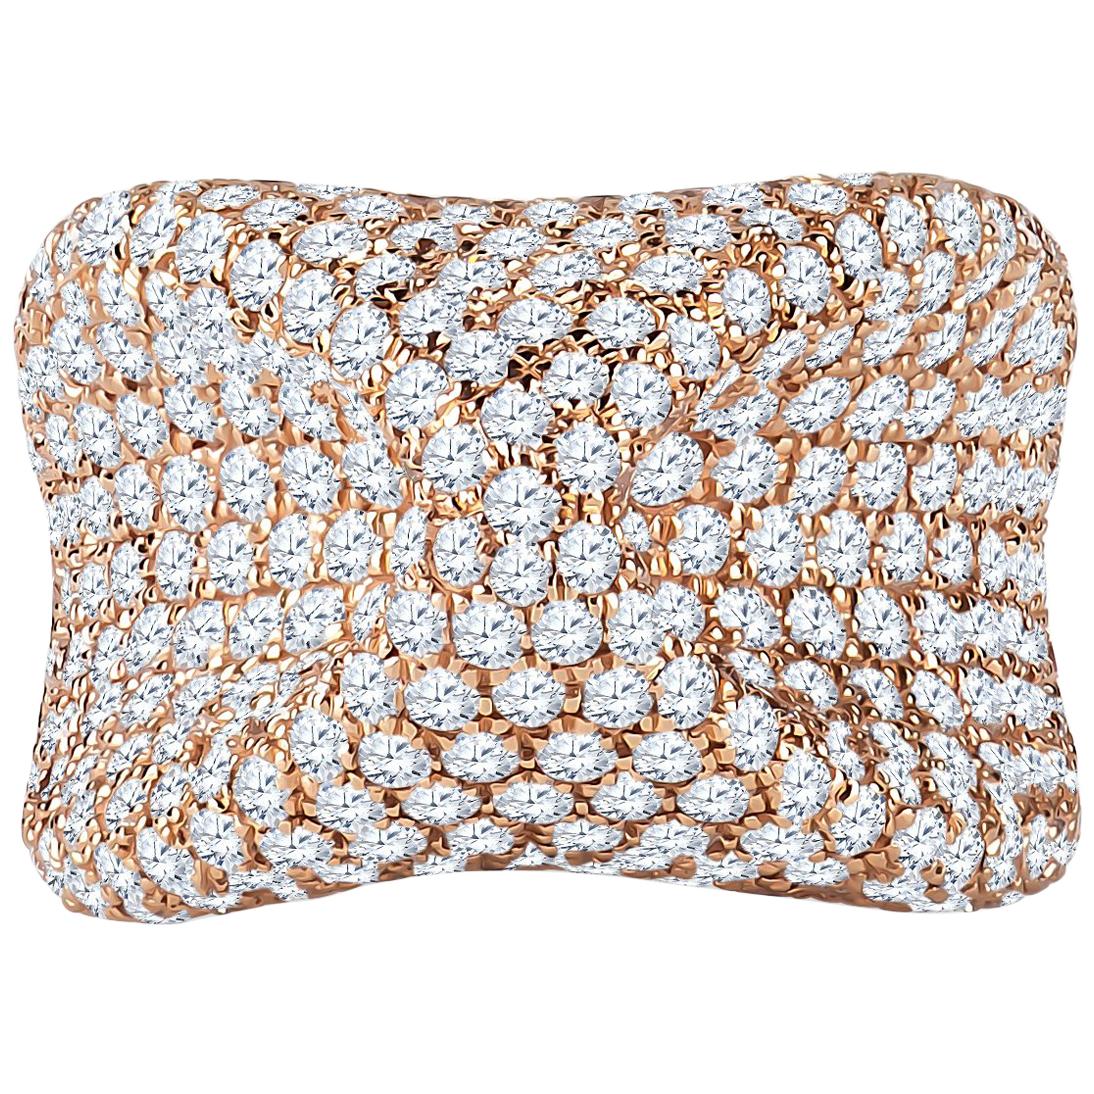 6.21 Carat Total Weight Diamond Fashion Ring in 18 Karat Rose Gold